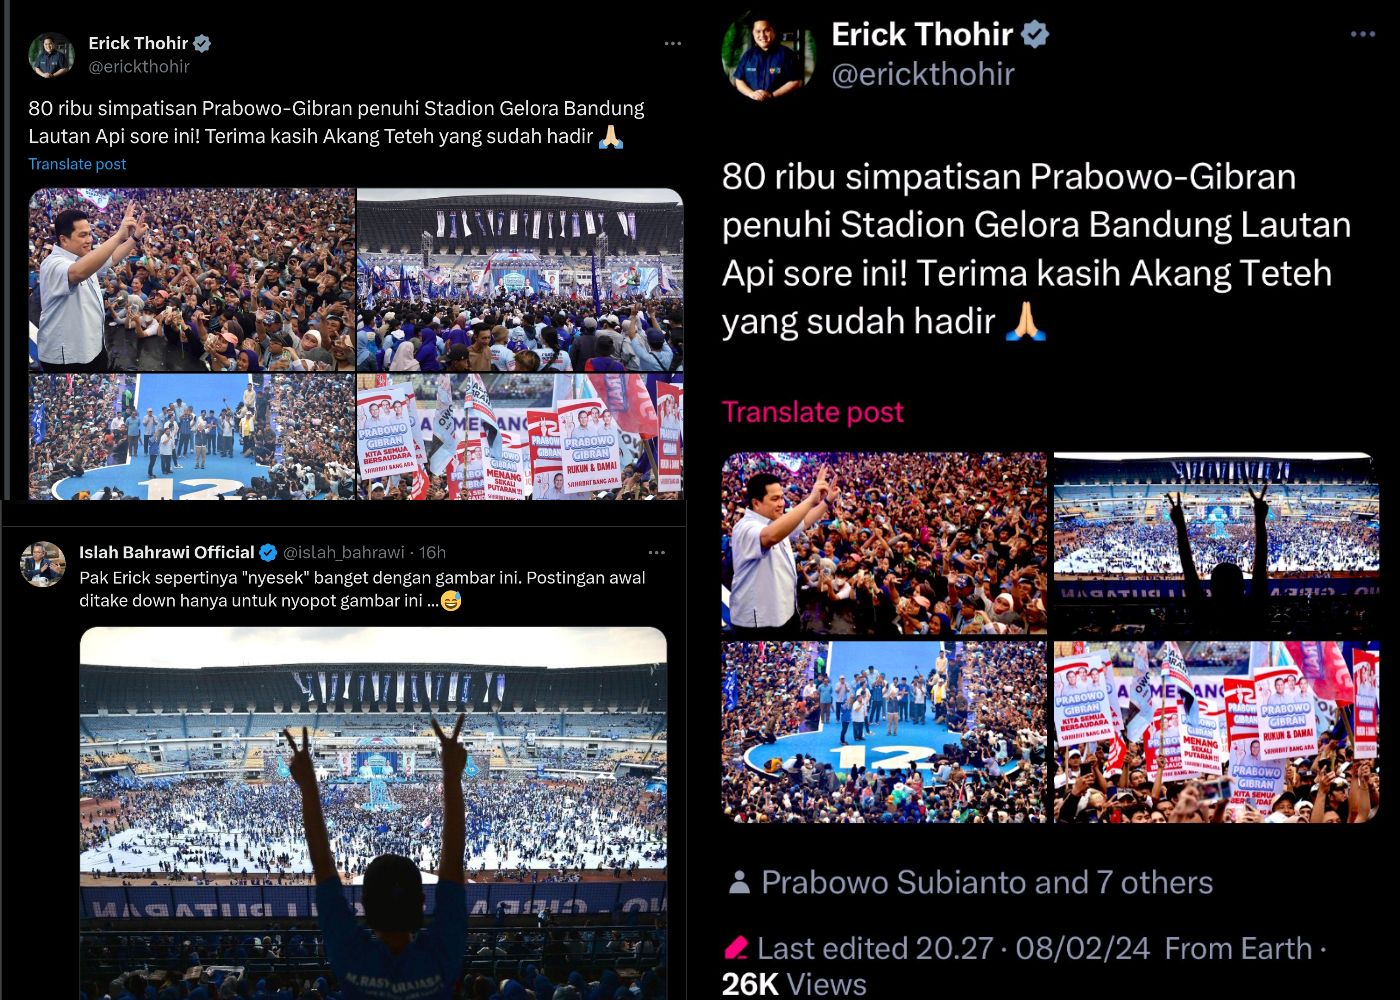 Unggahan Erick Thohir yang dirujak publik karena hapus foto kampanye Prabowo yang terlihat sepi.